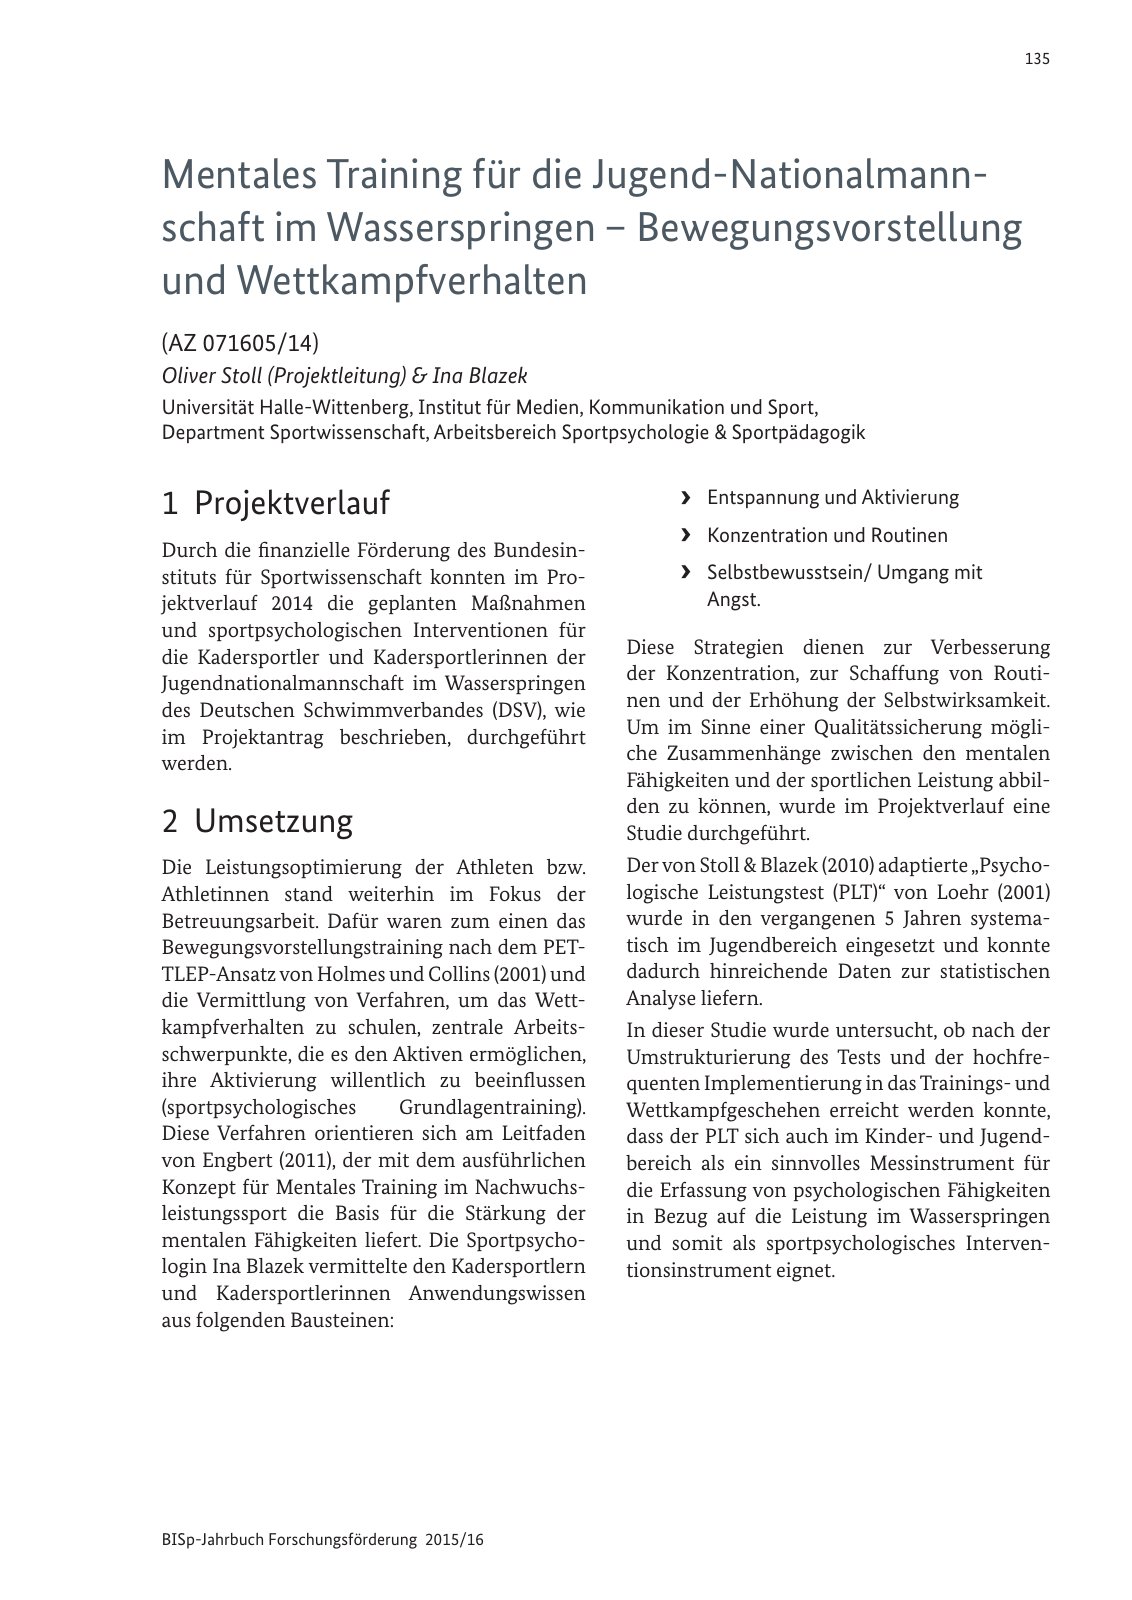 Vorschau BISp-Jahrbuch Forschungsförderung 2015/16 Seite 137